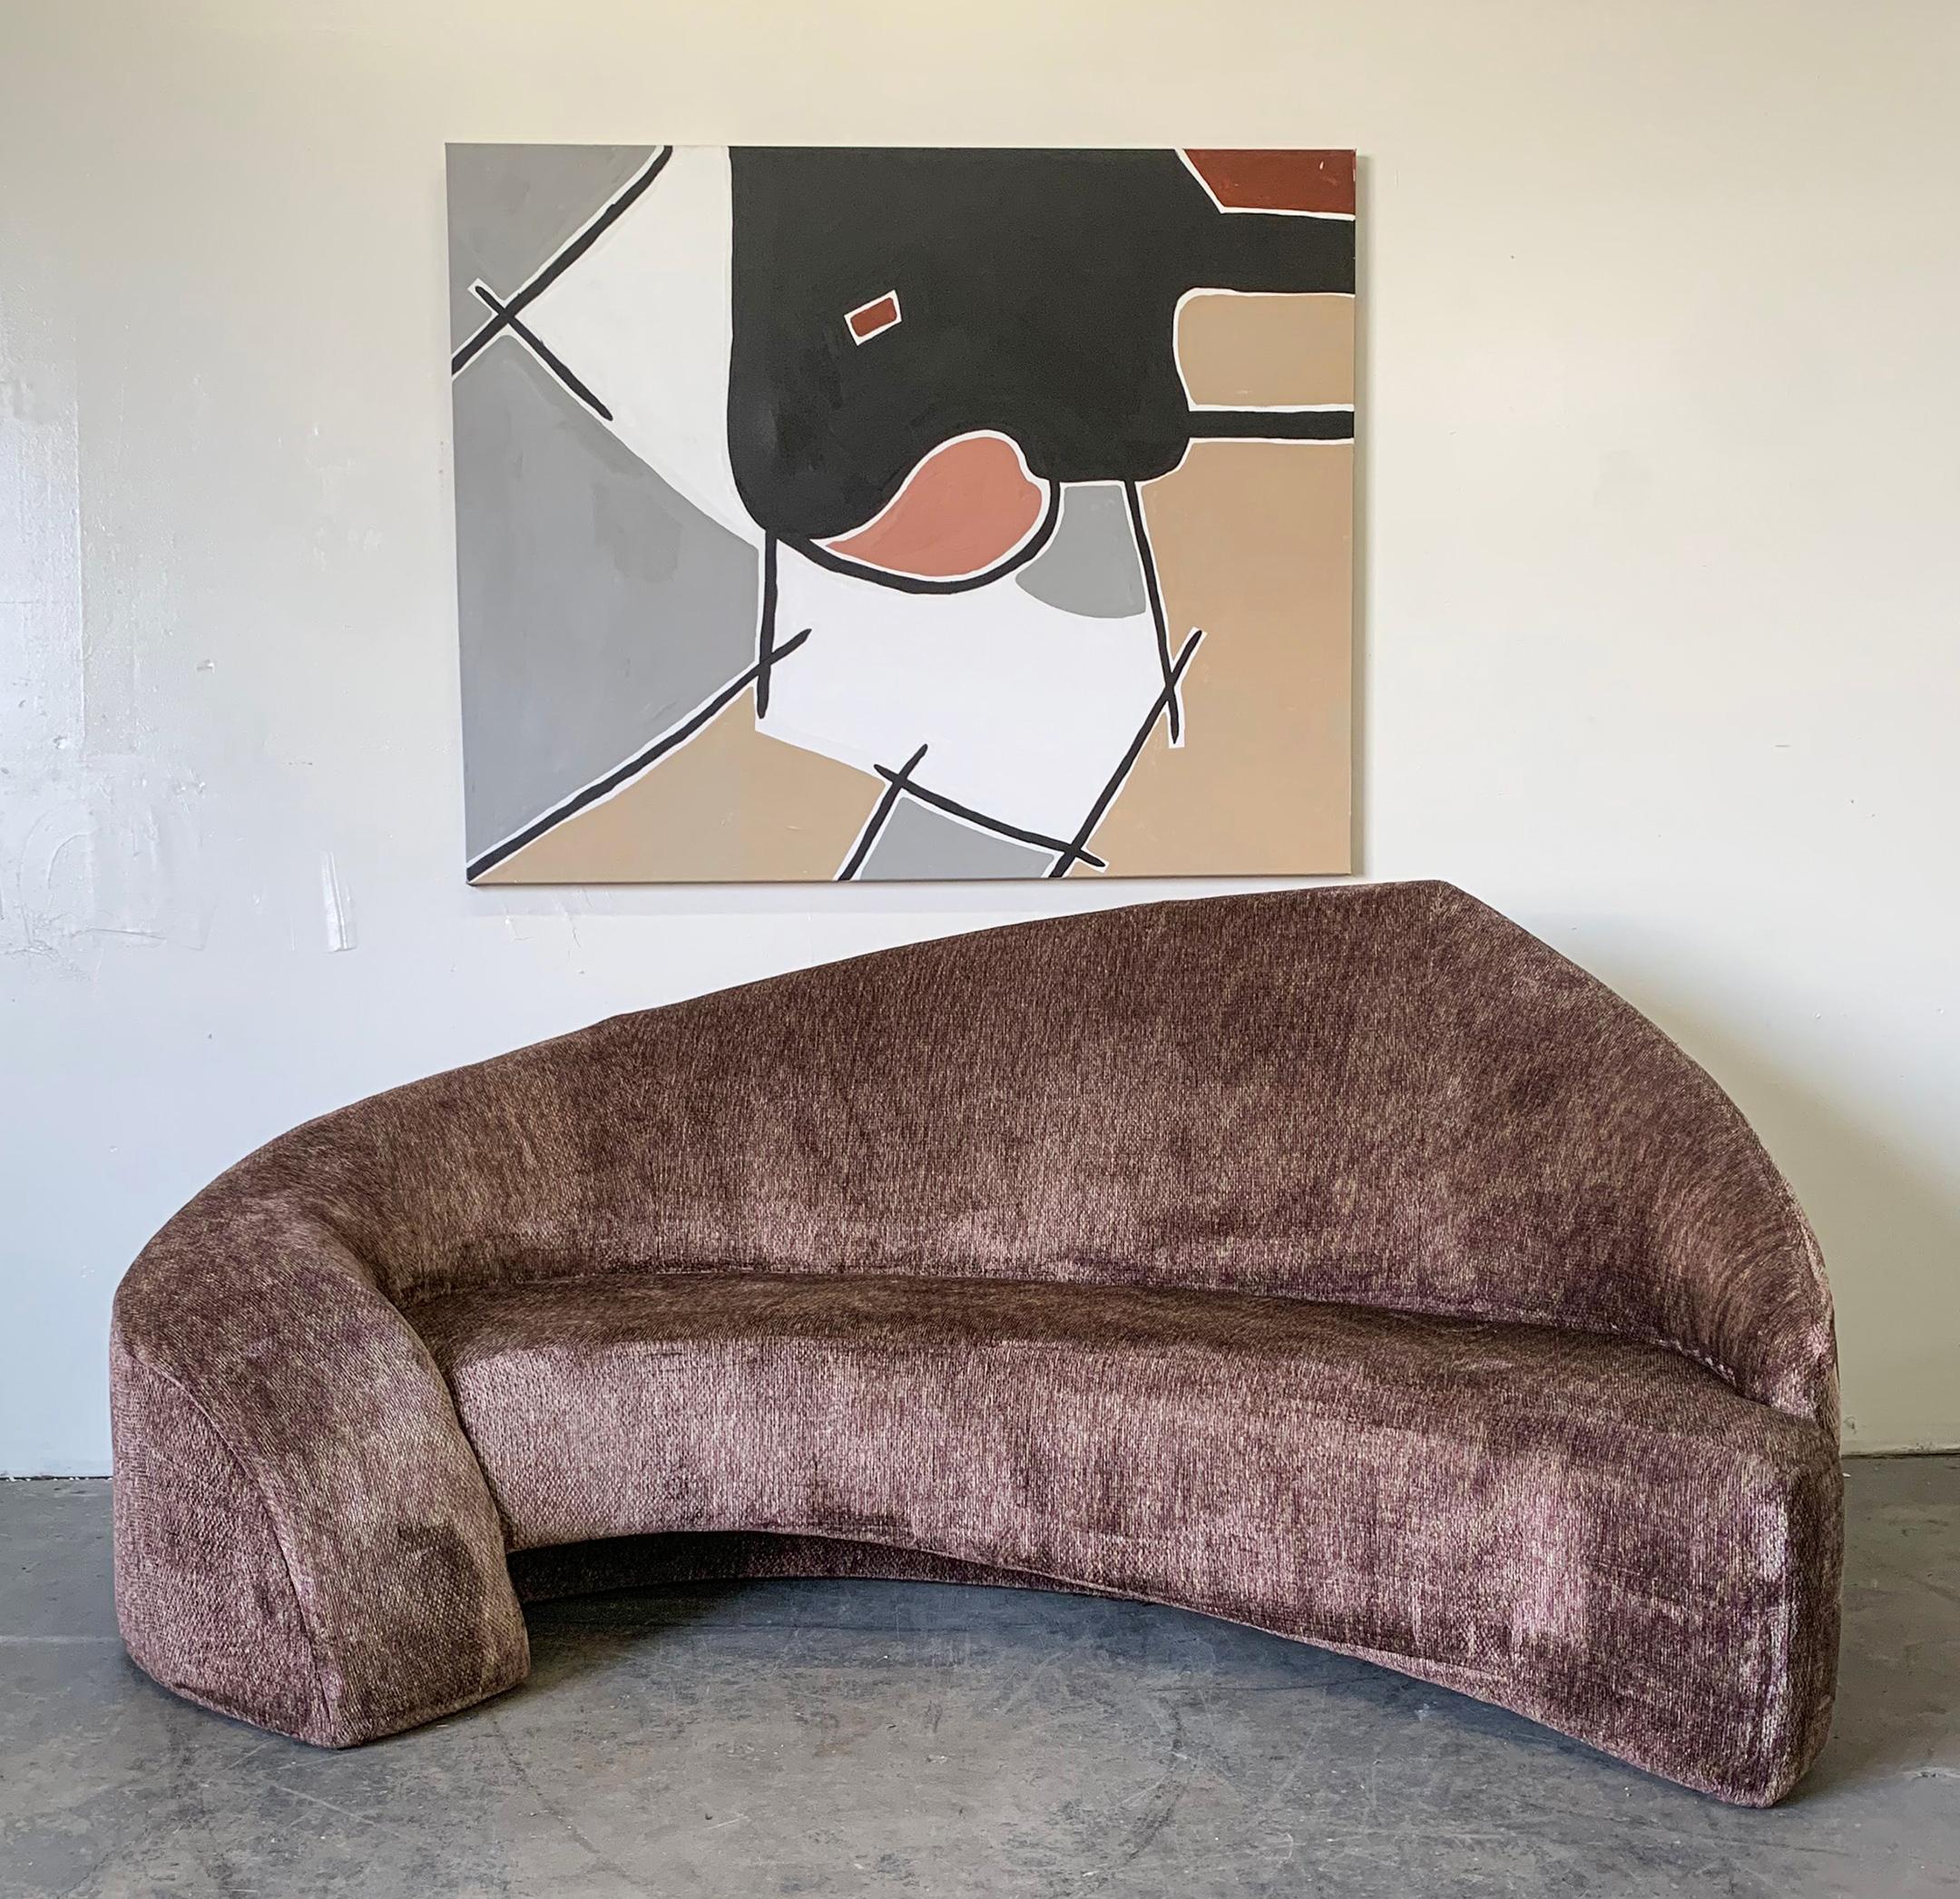 Ein absolut beeindruckendes postmodernes Sofa, das Mitte der 1990er Jahre entworfen und hergestellt wurde. Dieses atemberaubende Sofa erinnert an die Entwürfe von Vladimir Kagan und eignet sich hervorragend für Mid-Century Modern und postmodernes